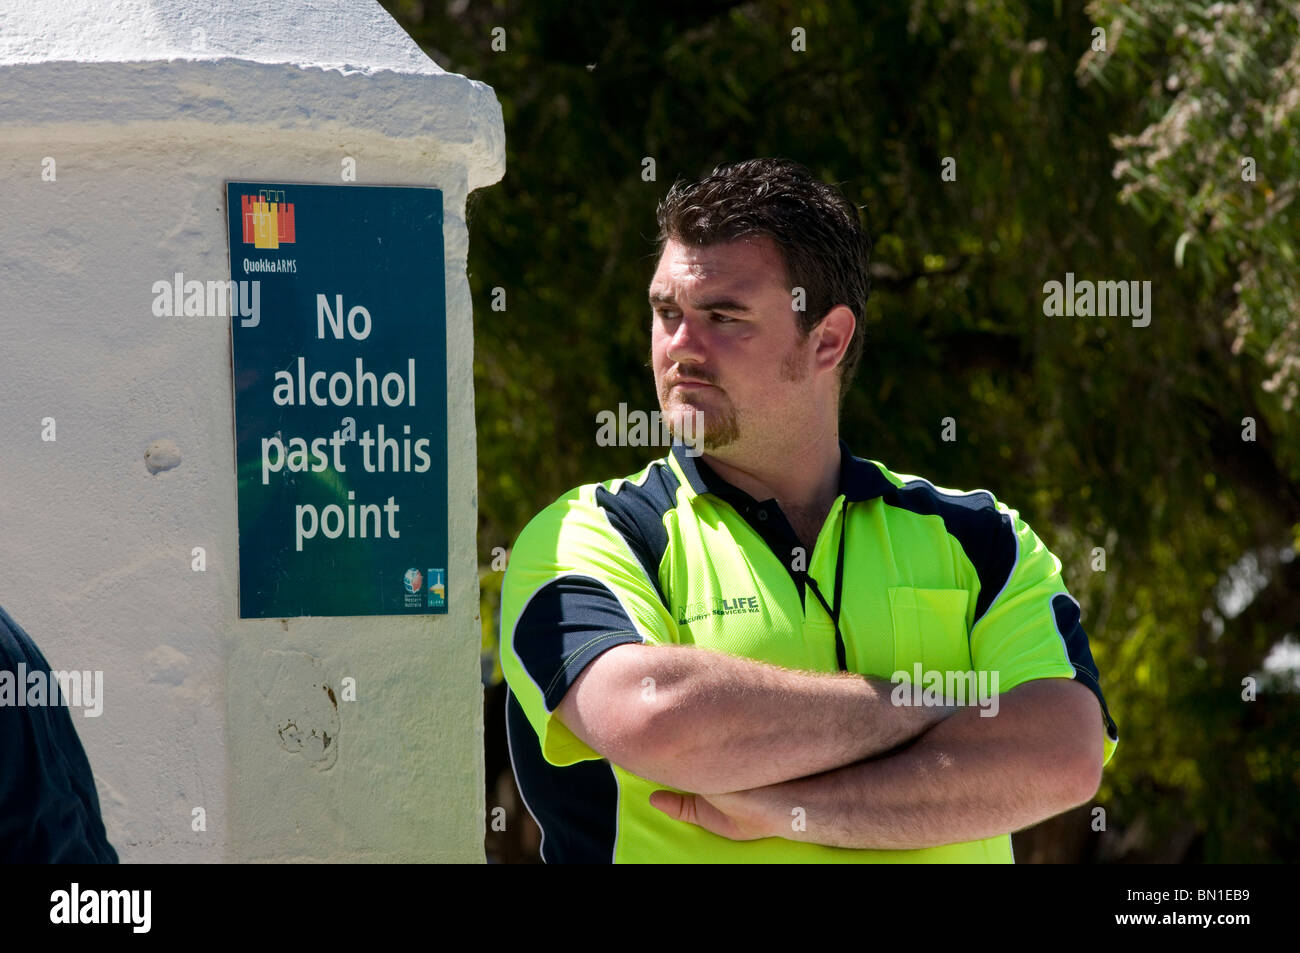 Garde de sécurité à l'hôtel de la station balnéaire de Rottnest Island Australie occidentale Banque D'Images